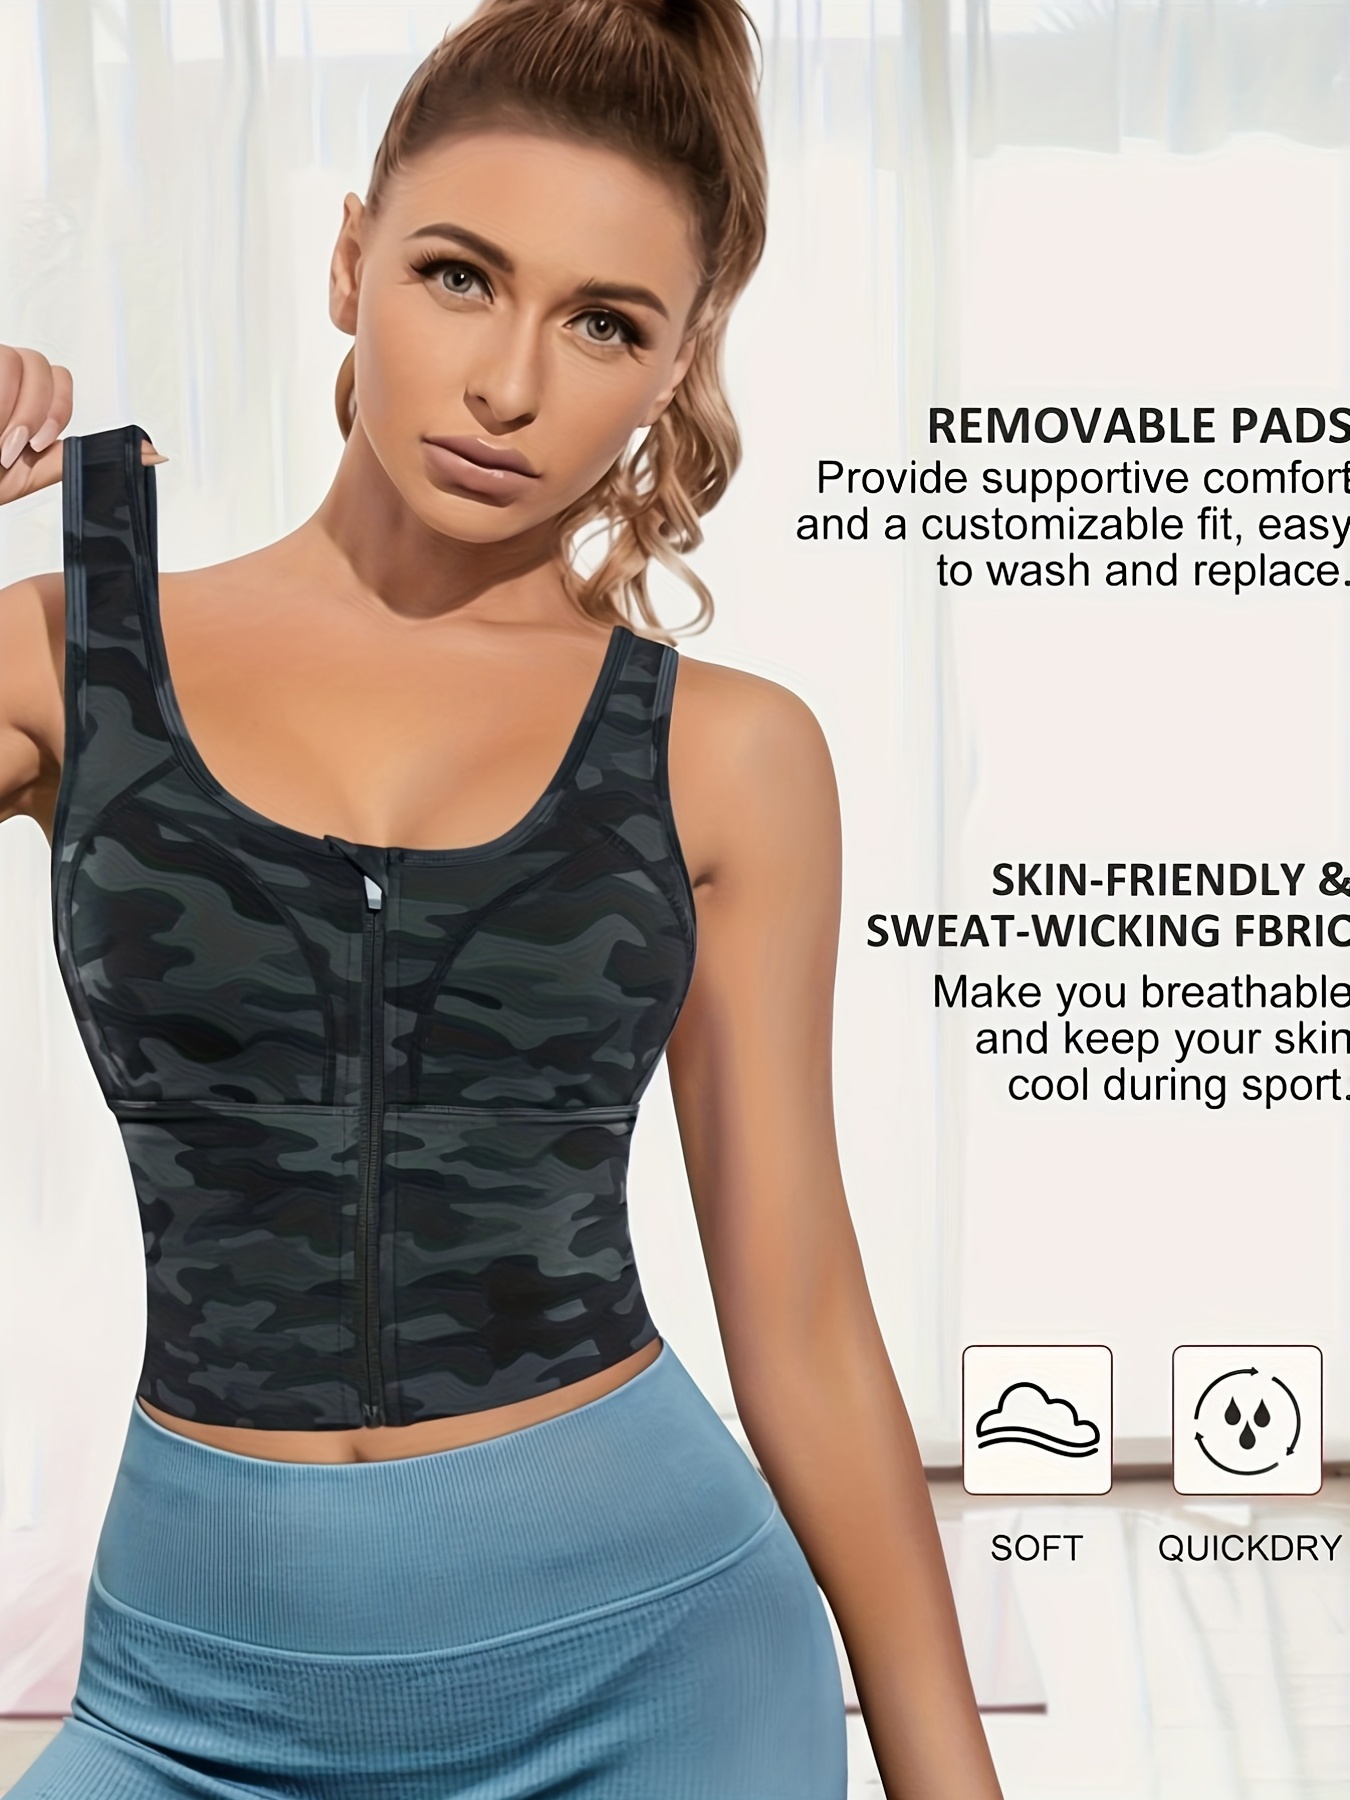 Women's Tie Dye Strappy Longline Sports Bra, Crisscross Back Medium Support  Padded, Workout Tank Yoga Crop Top